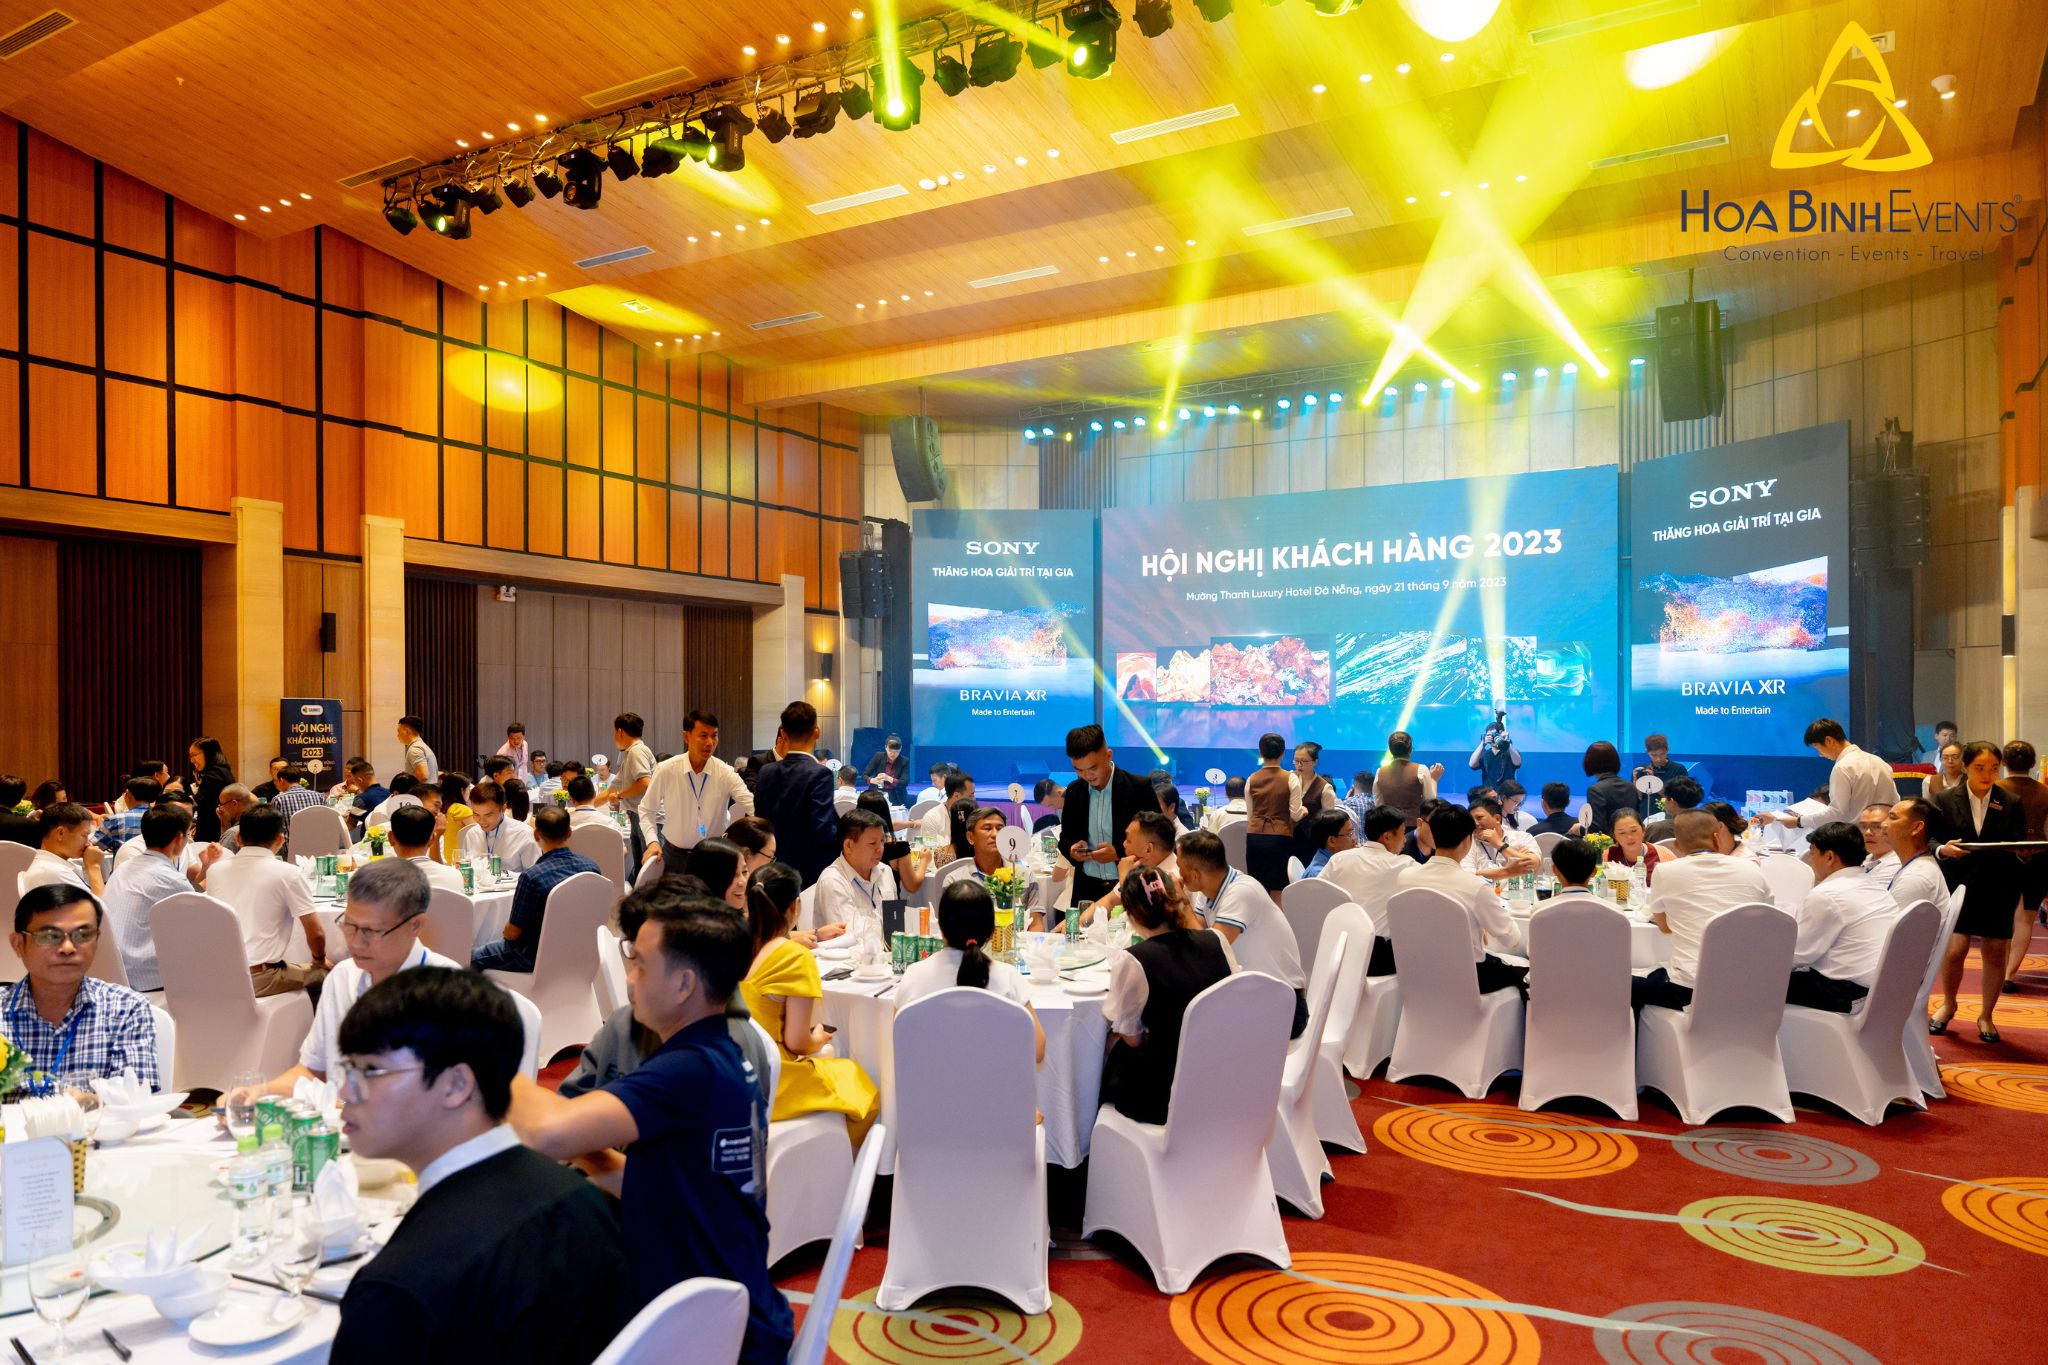 Hội nghị gala dinner giúp doanh nghiệp gắn kết với khách hàng